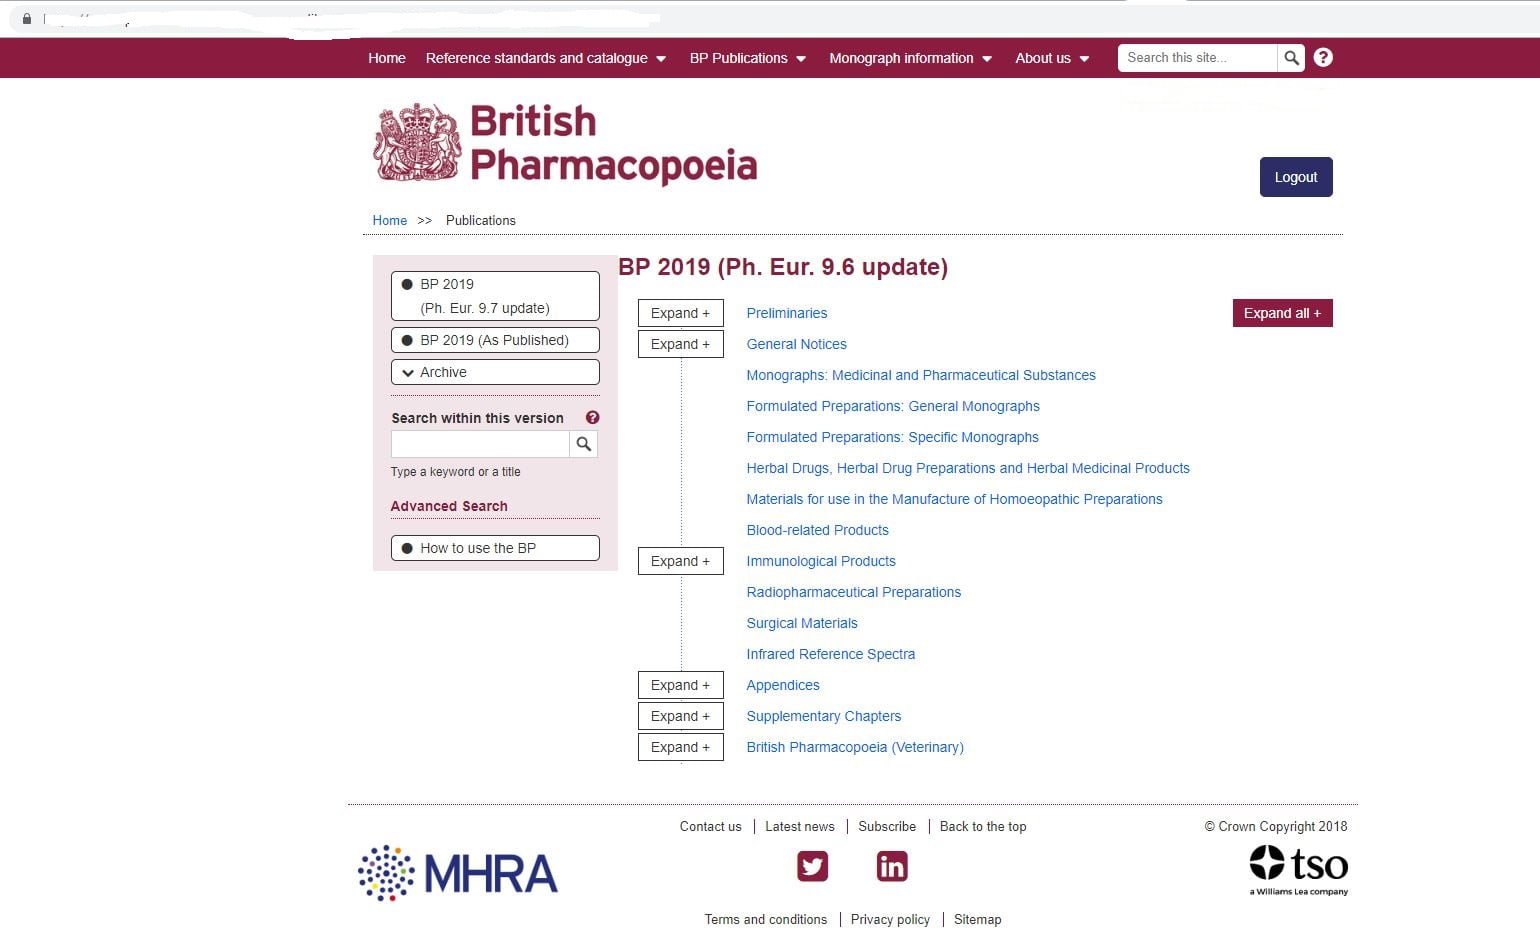 دانلود کتاب British pharmacopoeia جدیدترین نسخه سال 2019 دسترسی به متن کامل فارماكوپه انگلستان BP پسورد pharmacopoeia.com